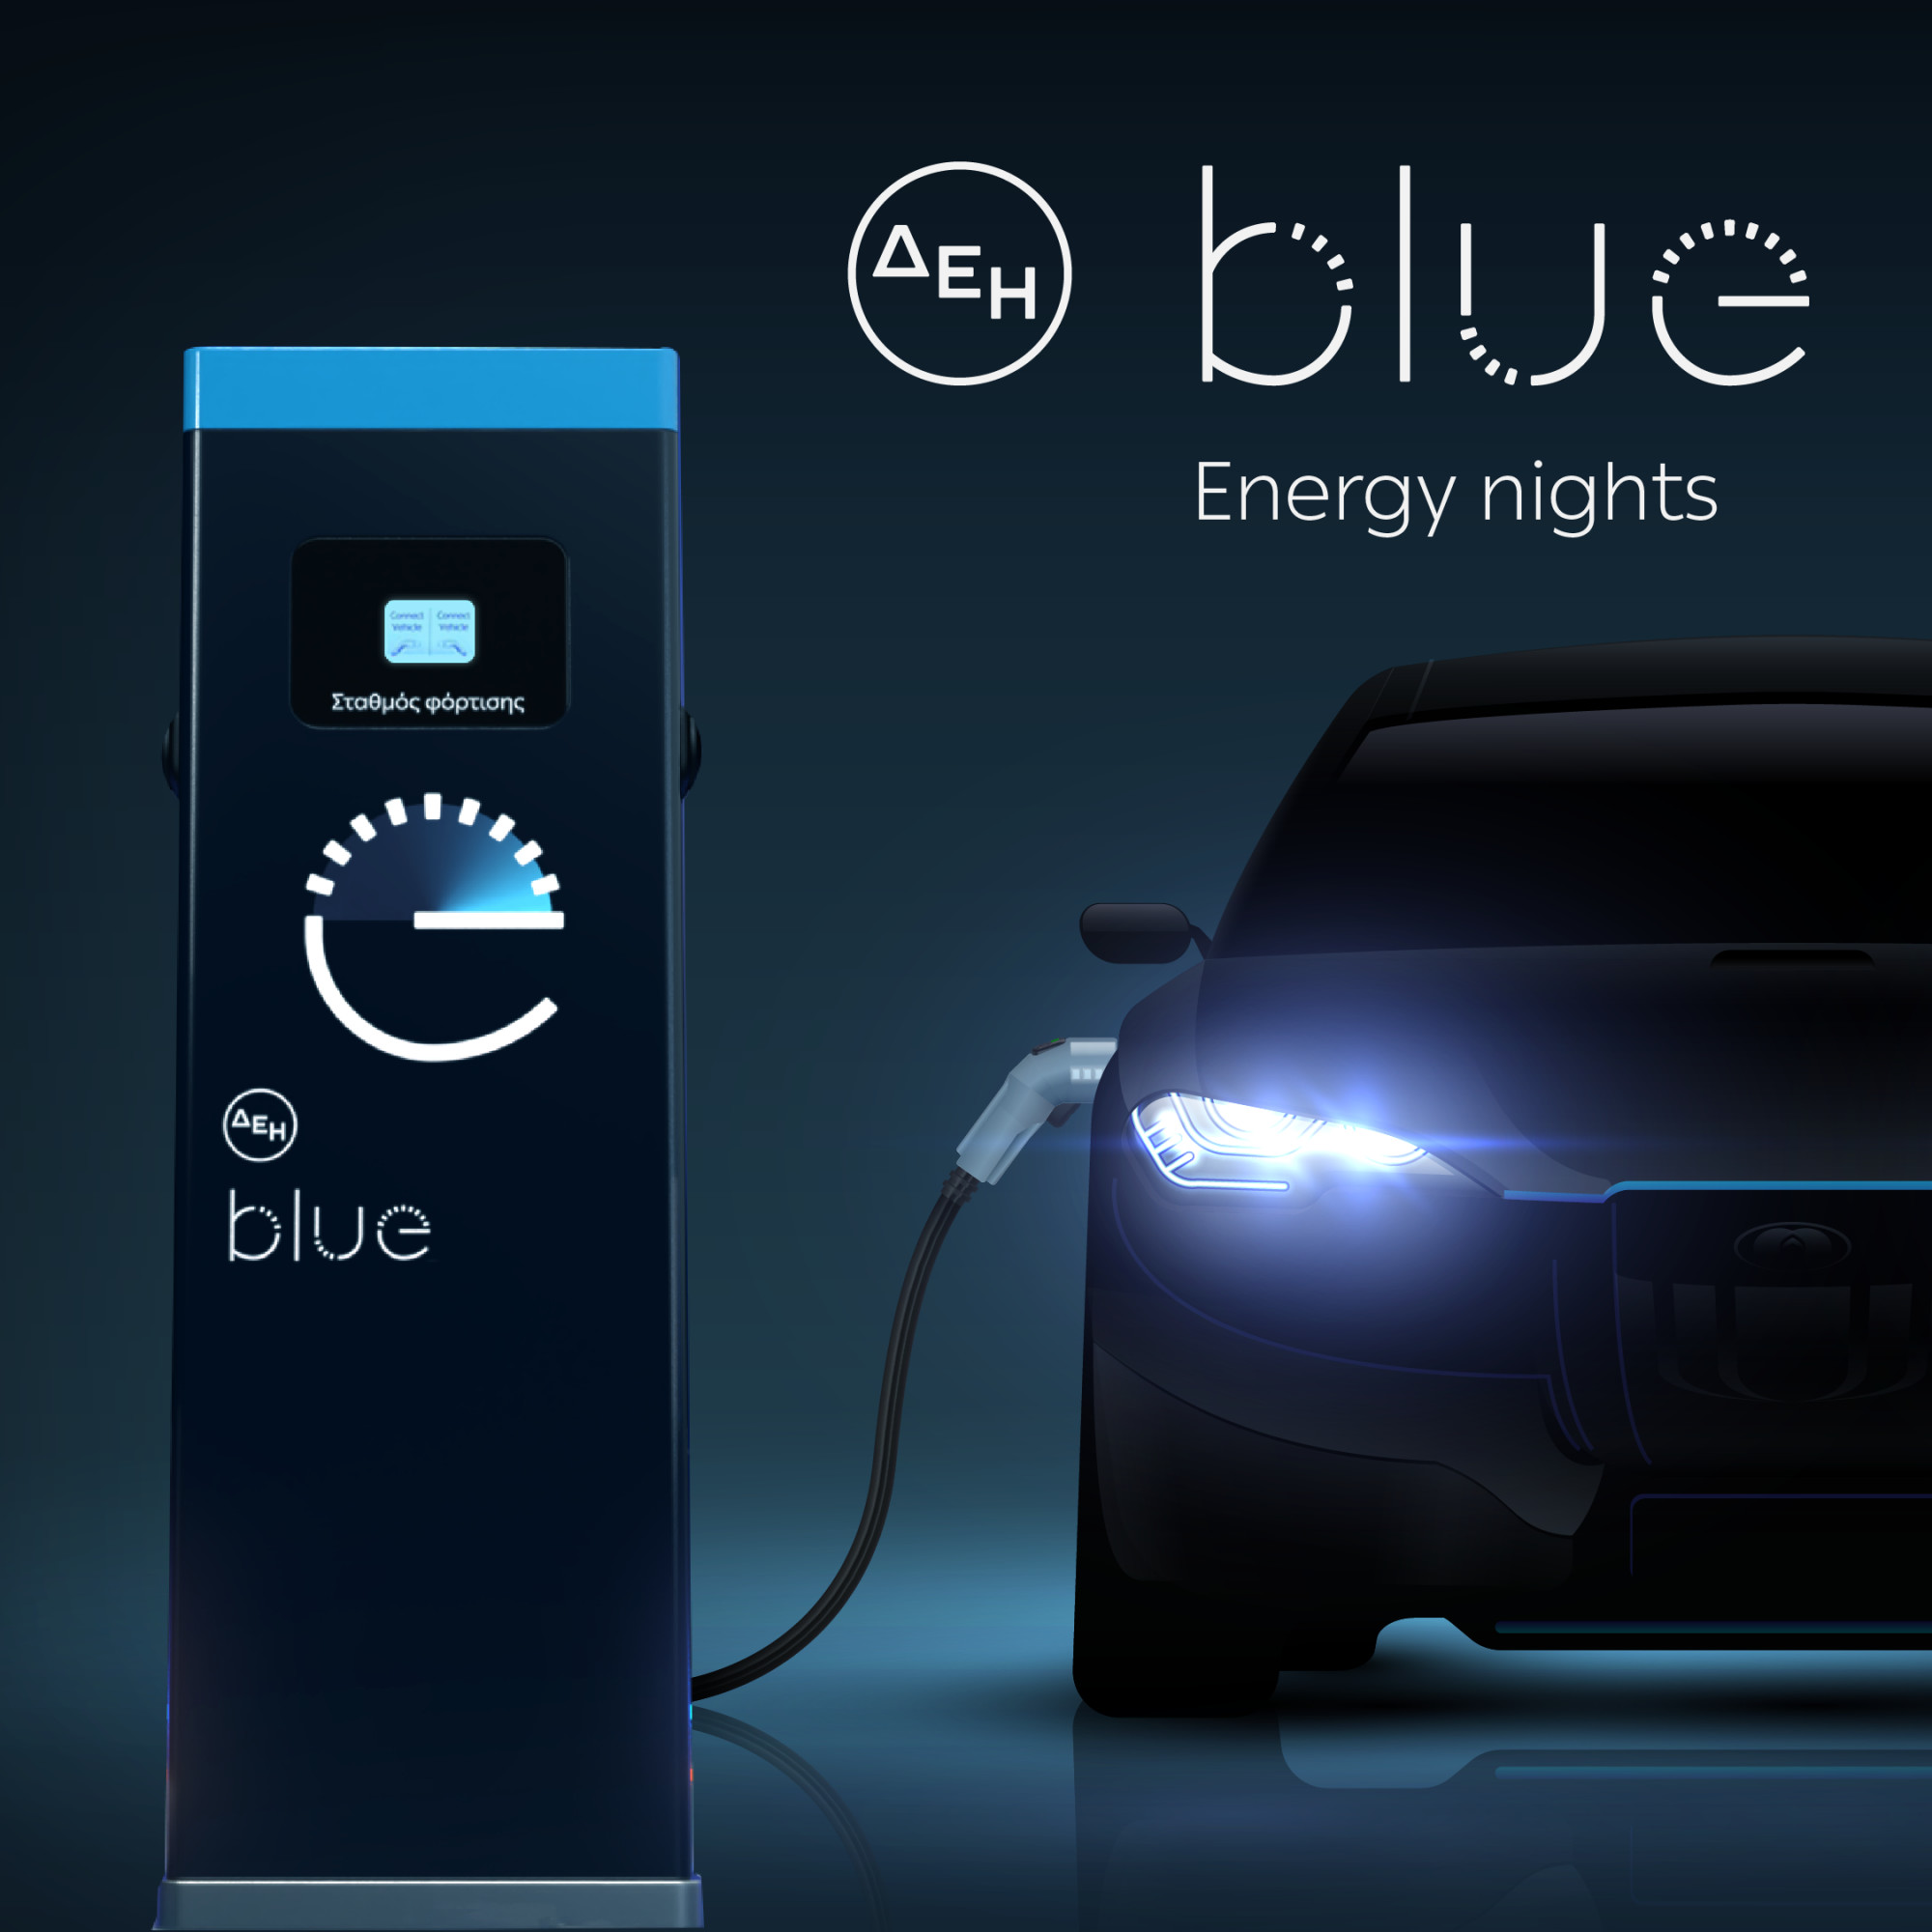 ΔΕΗ blue «Energy nights»: 20% έκπτωση για νυχτερινή φόρτιση σε επιλεγμένα σούπερ μάρκετ